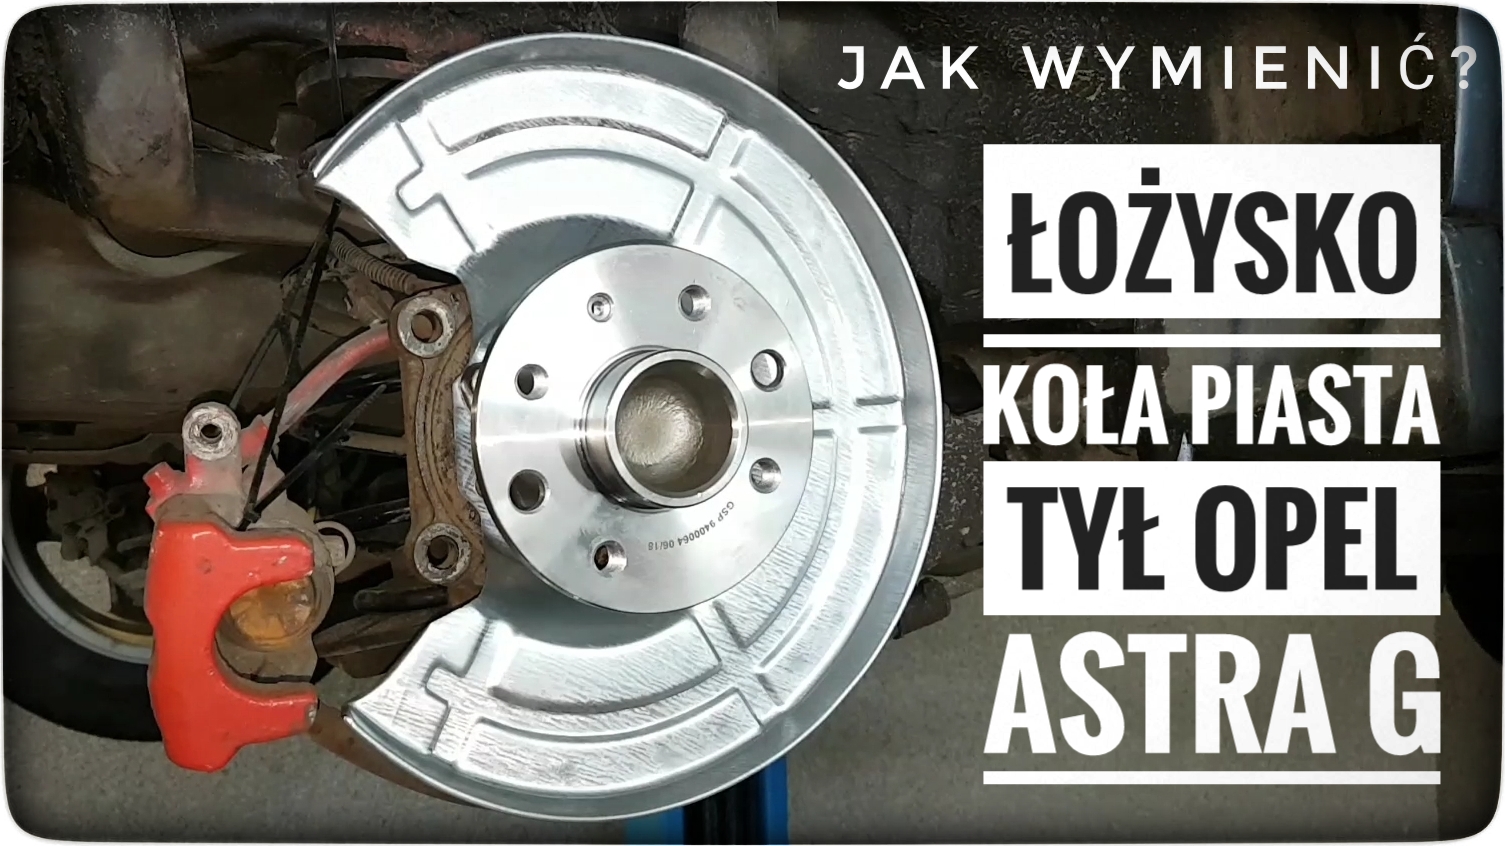 Jak Wymienić Piastę Łożysko Koła Tylnego Opel Astra G - Forumwiedzy